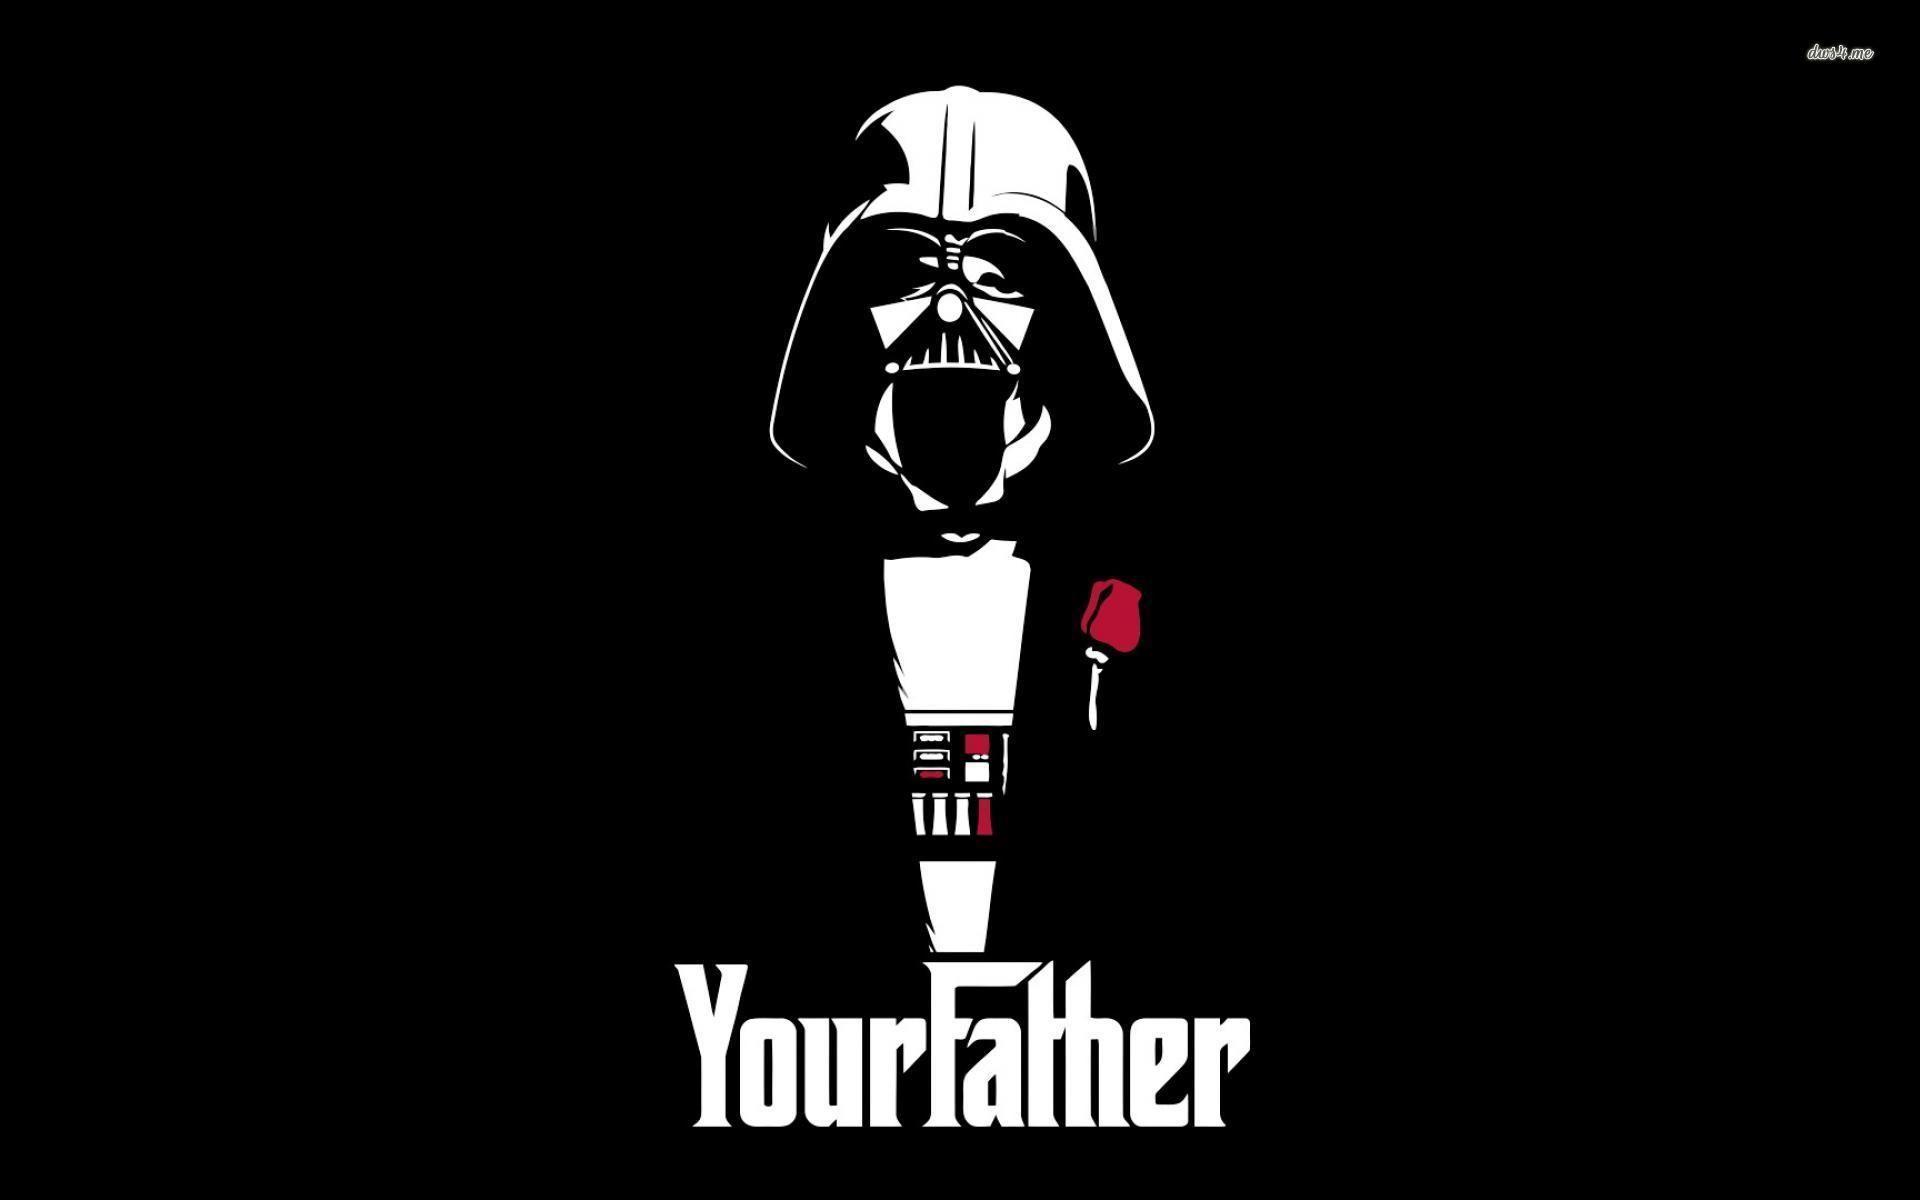 Darth Vader Godfather crossover wallpaper. Darth vader wallpaper, Star wars wallpaper, Star wars fan art